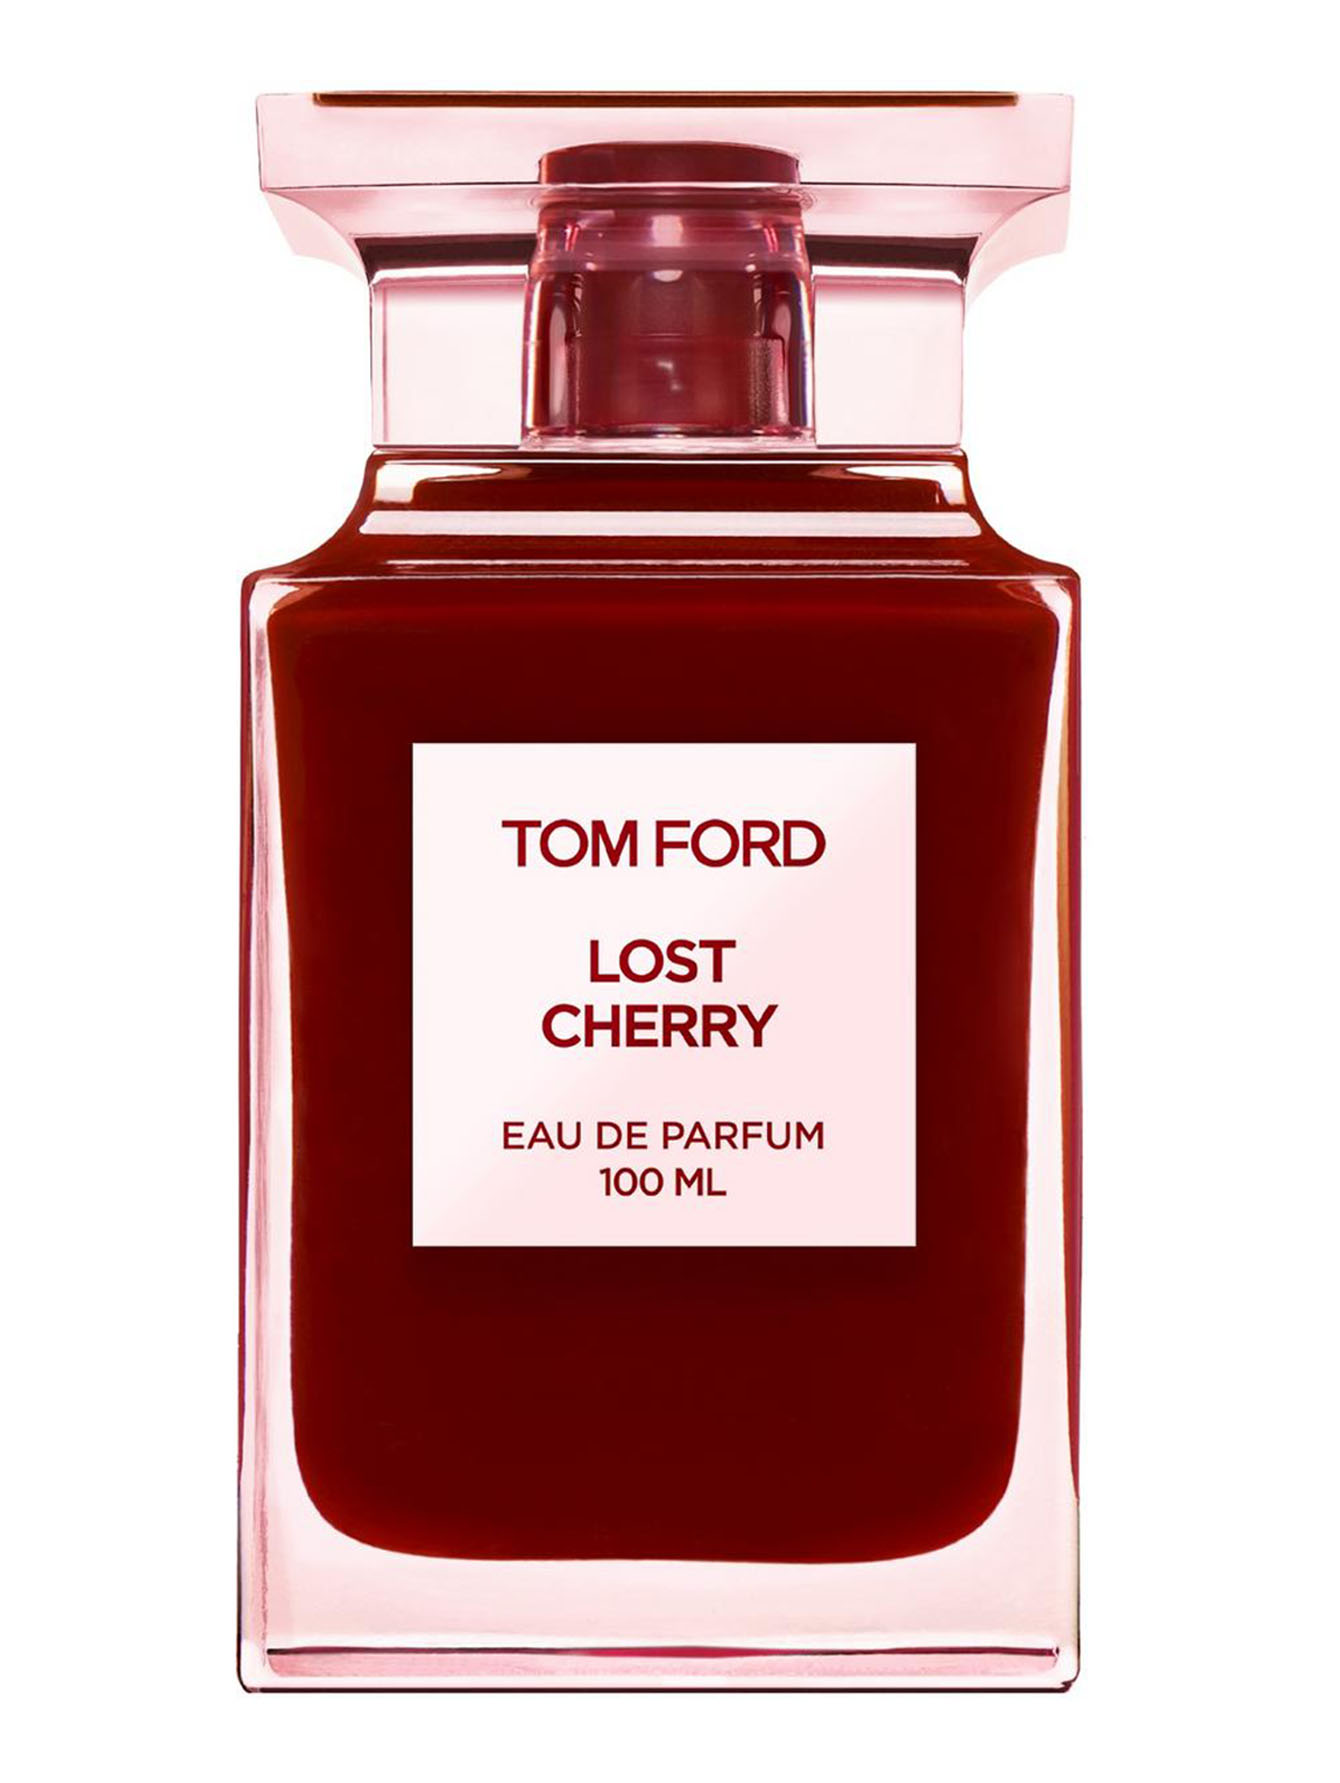 Парфюмерная вода Lost Cherry, 100 мл Tom Ford - купить по цене 46200 руб ин...